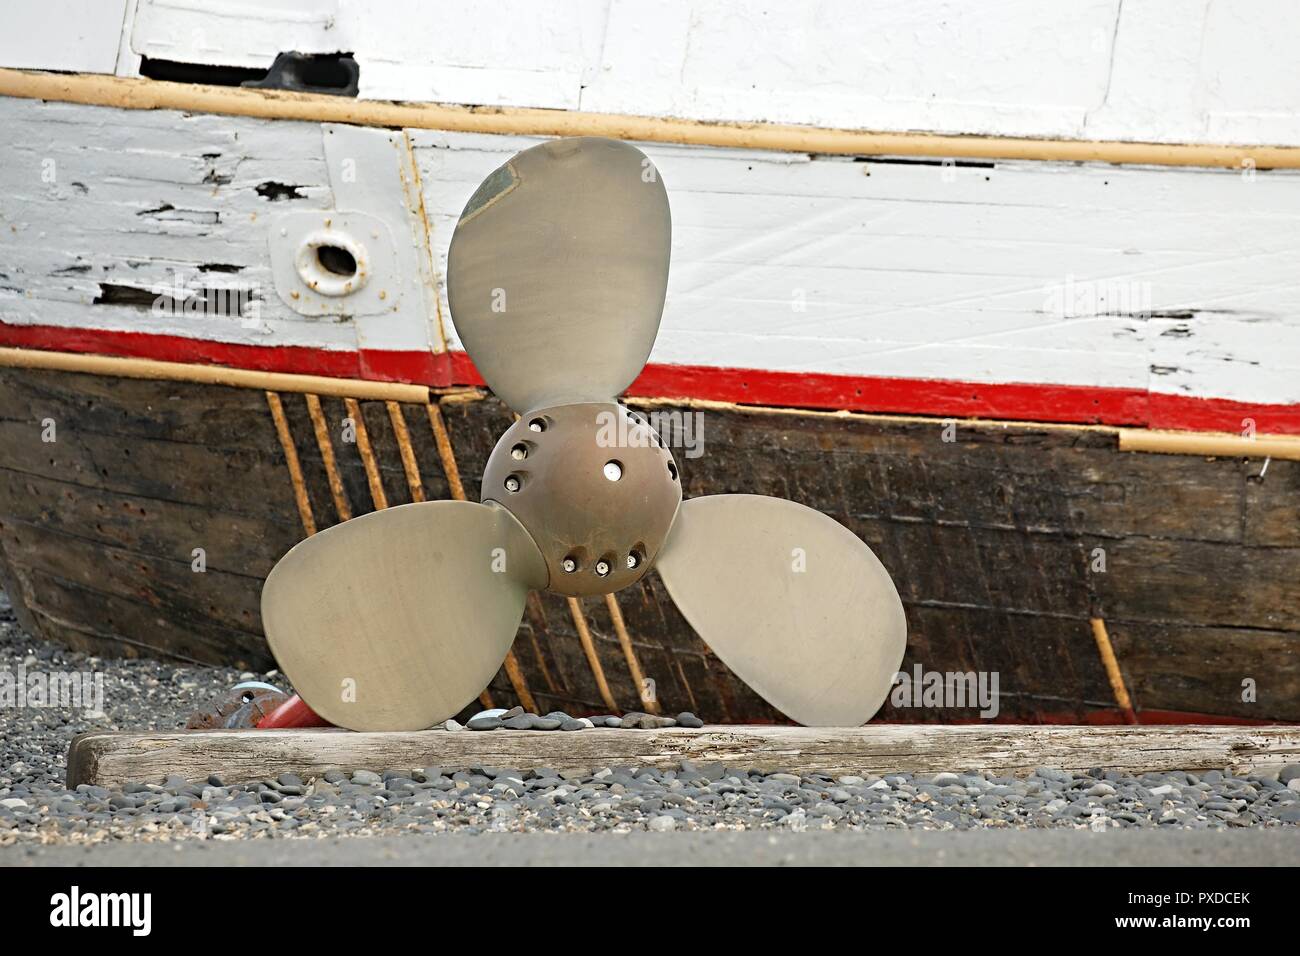 Ship propeller on shore Stock Photo